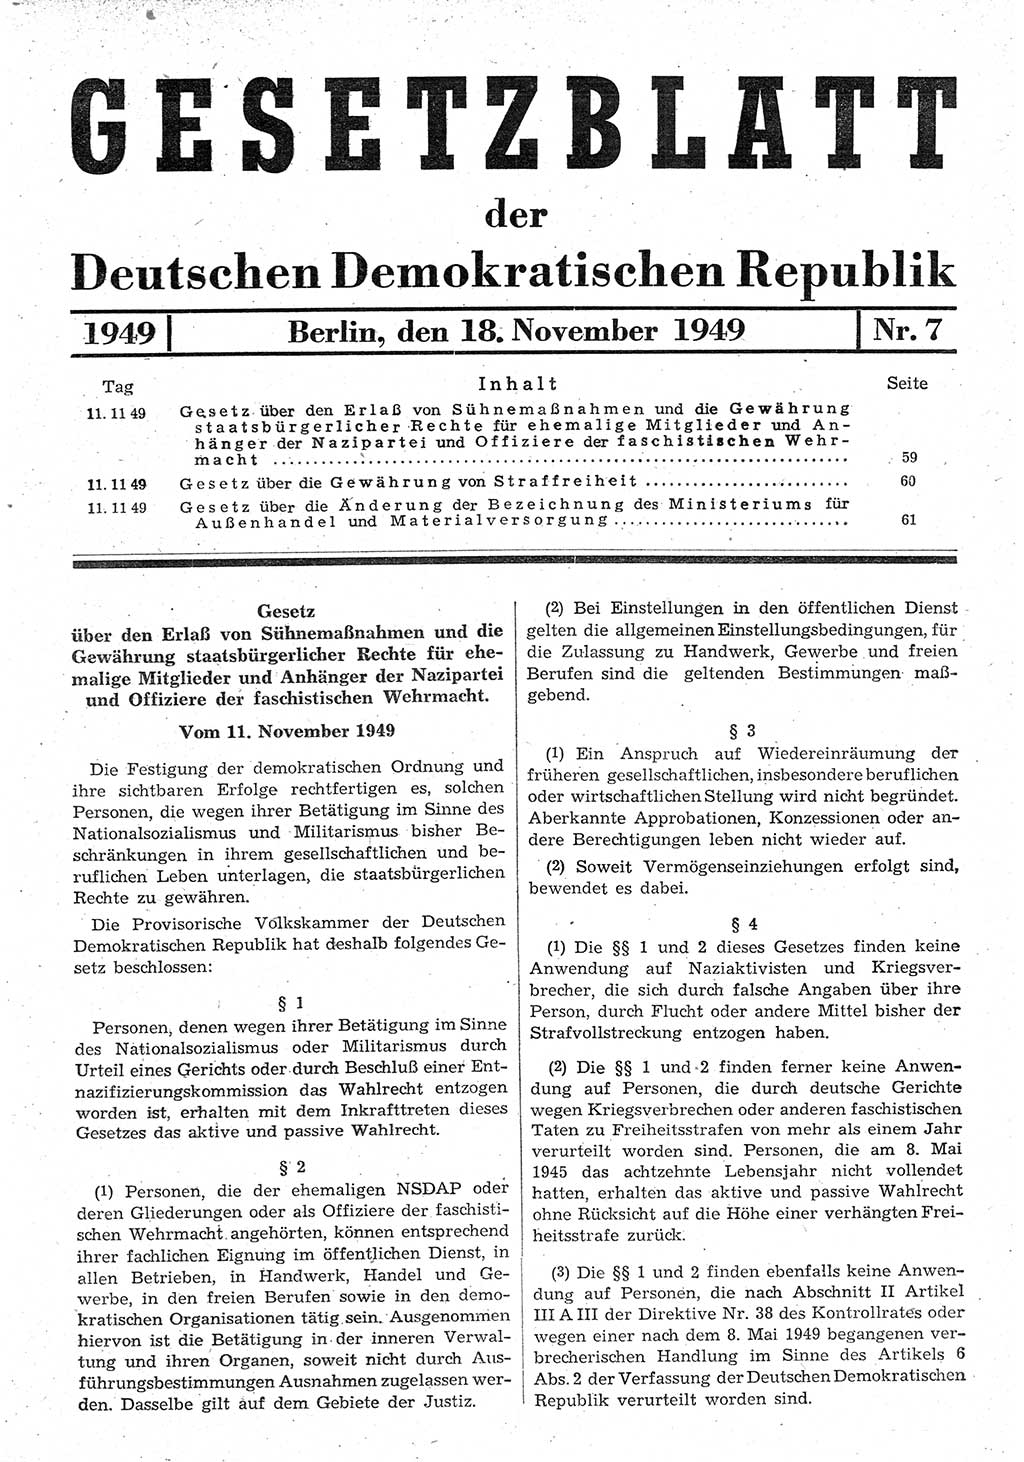 Gesetzblatt (GBl.) der Deutschen Demokratischen Republik (DDR) 1949, Seite 59 (GBl. DDR 1949, S. 59)